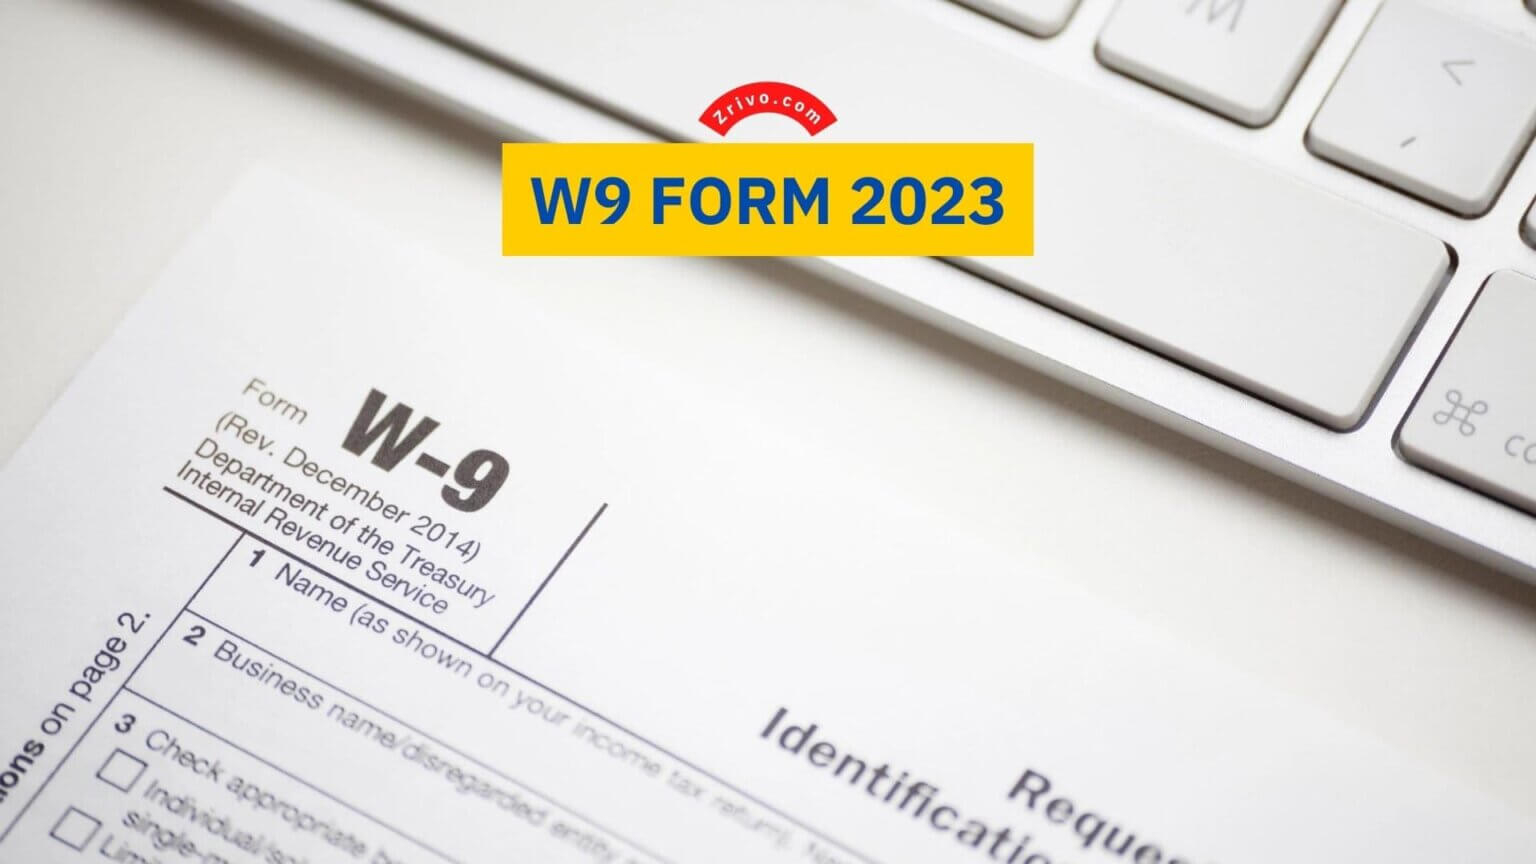 W9 Form 2023